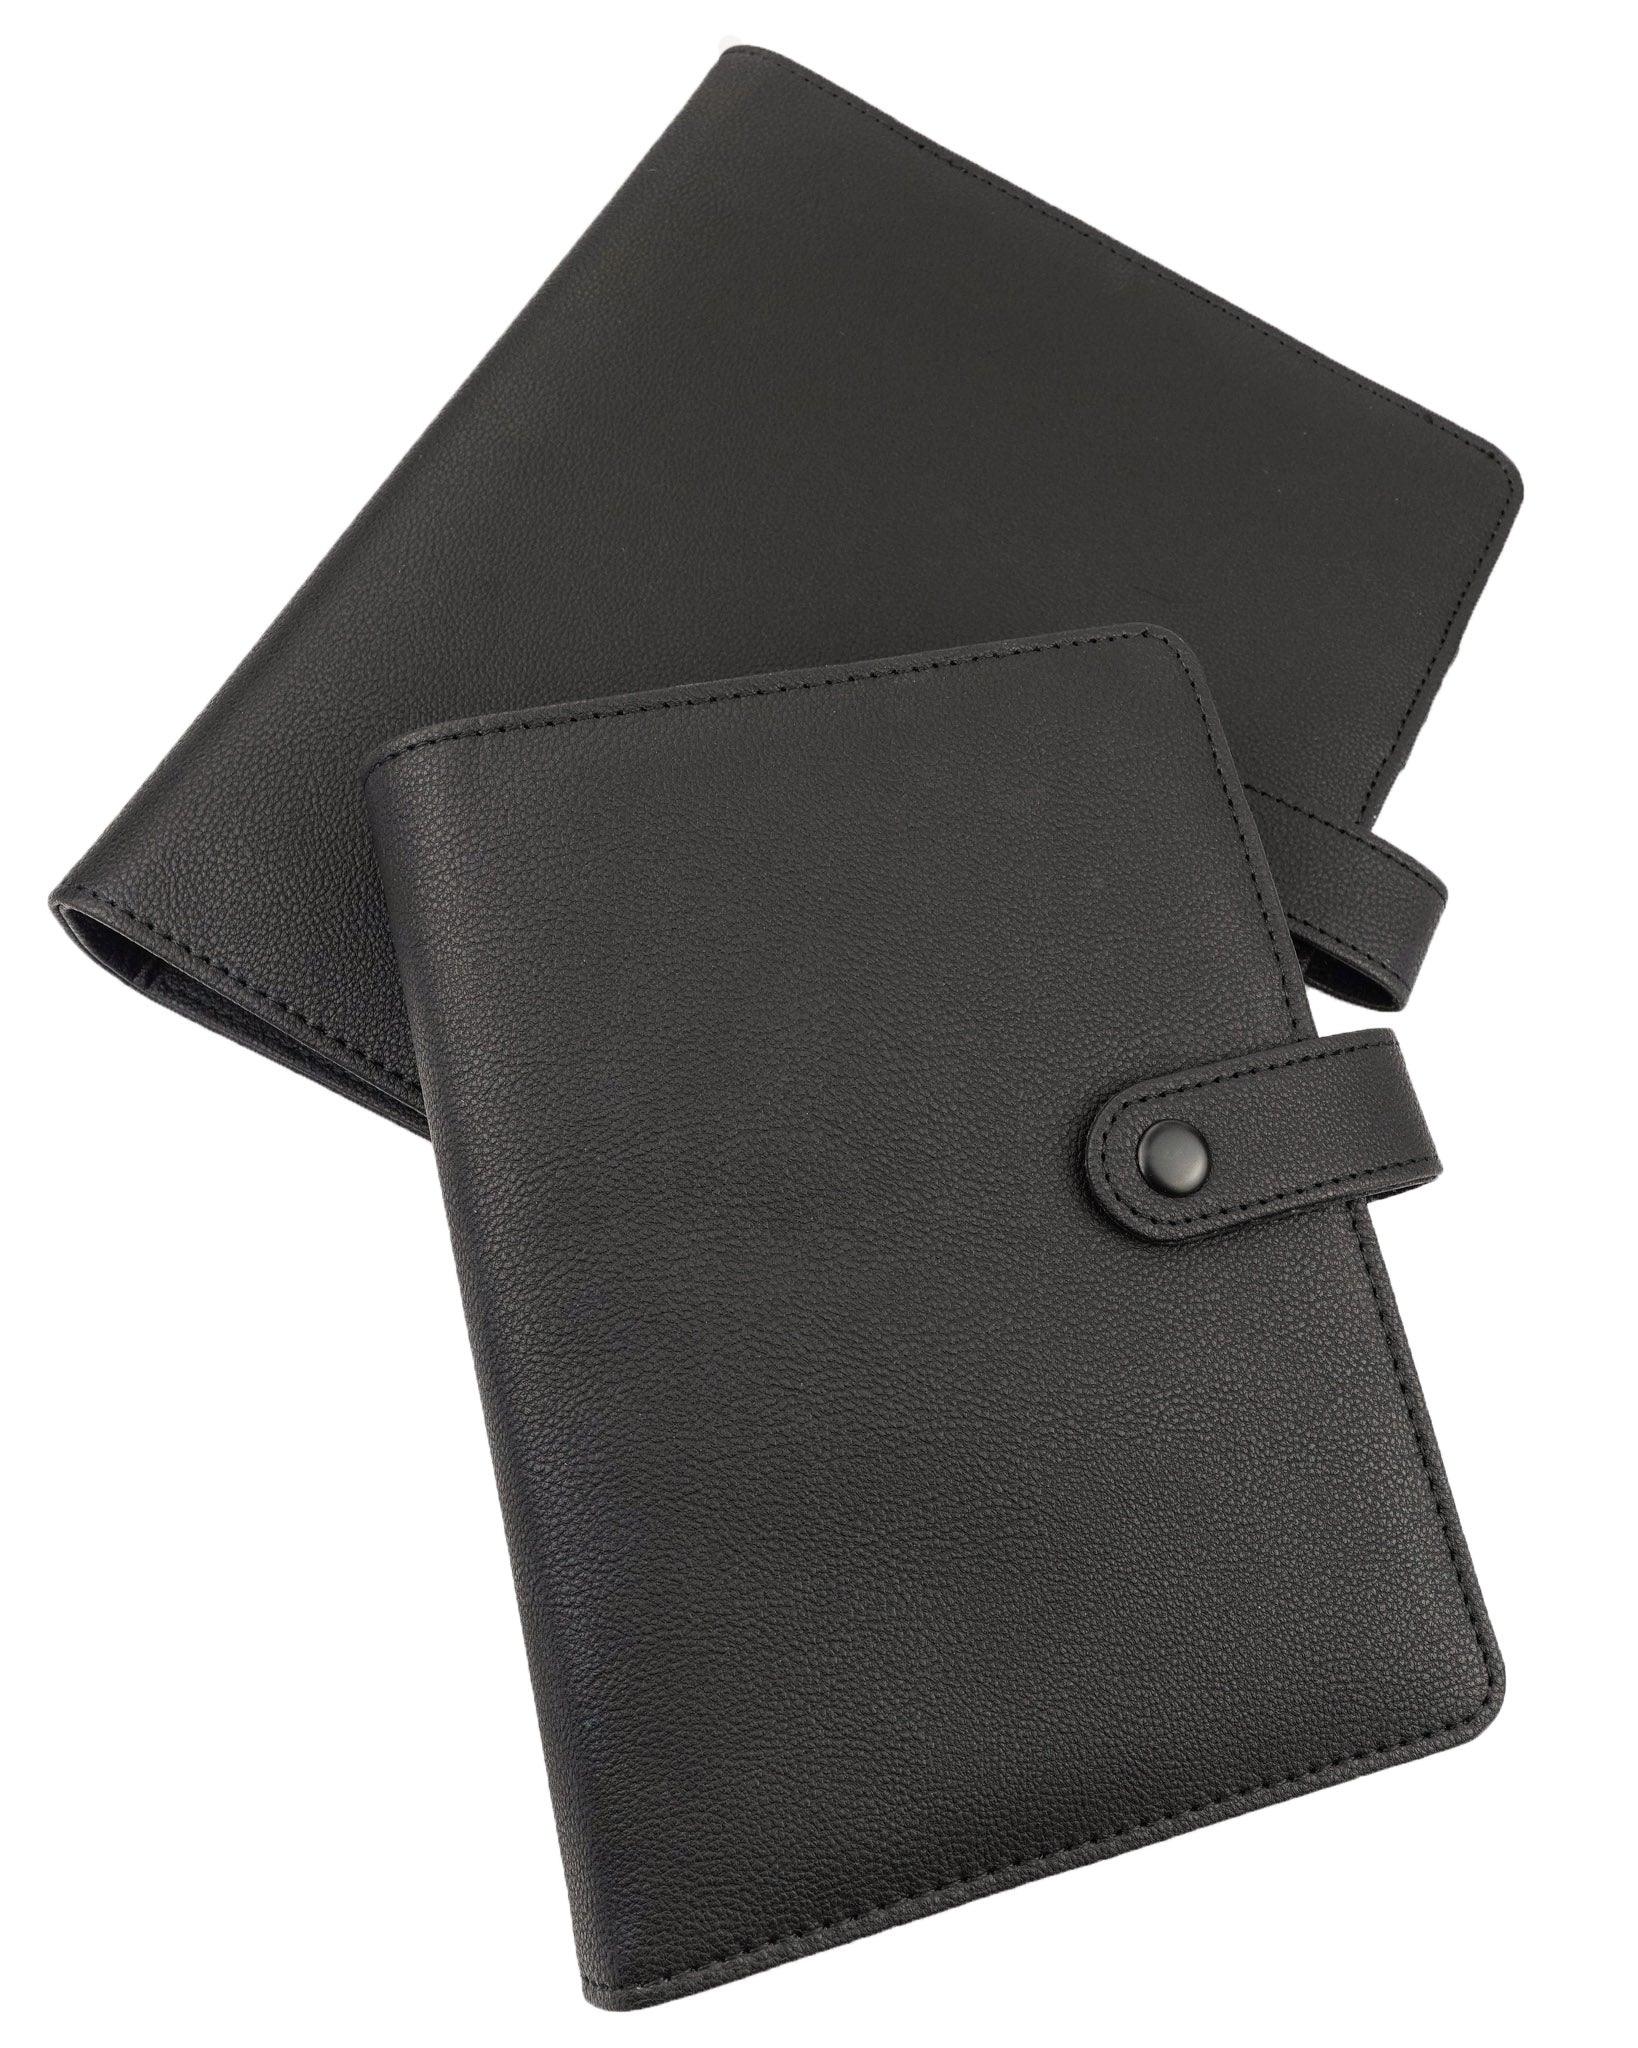 Leather B6 Agenda Planner Ringless Traveler's Notebook Cover